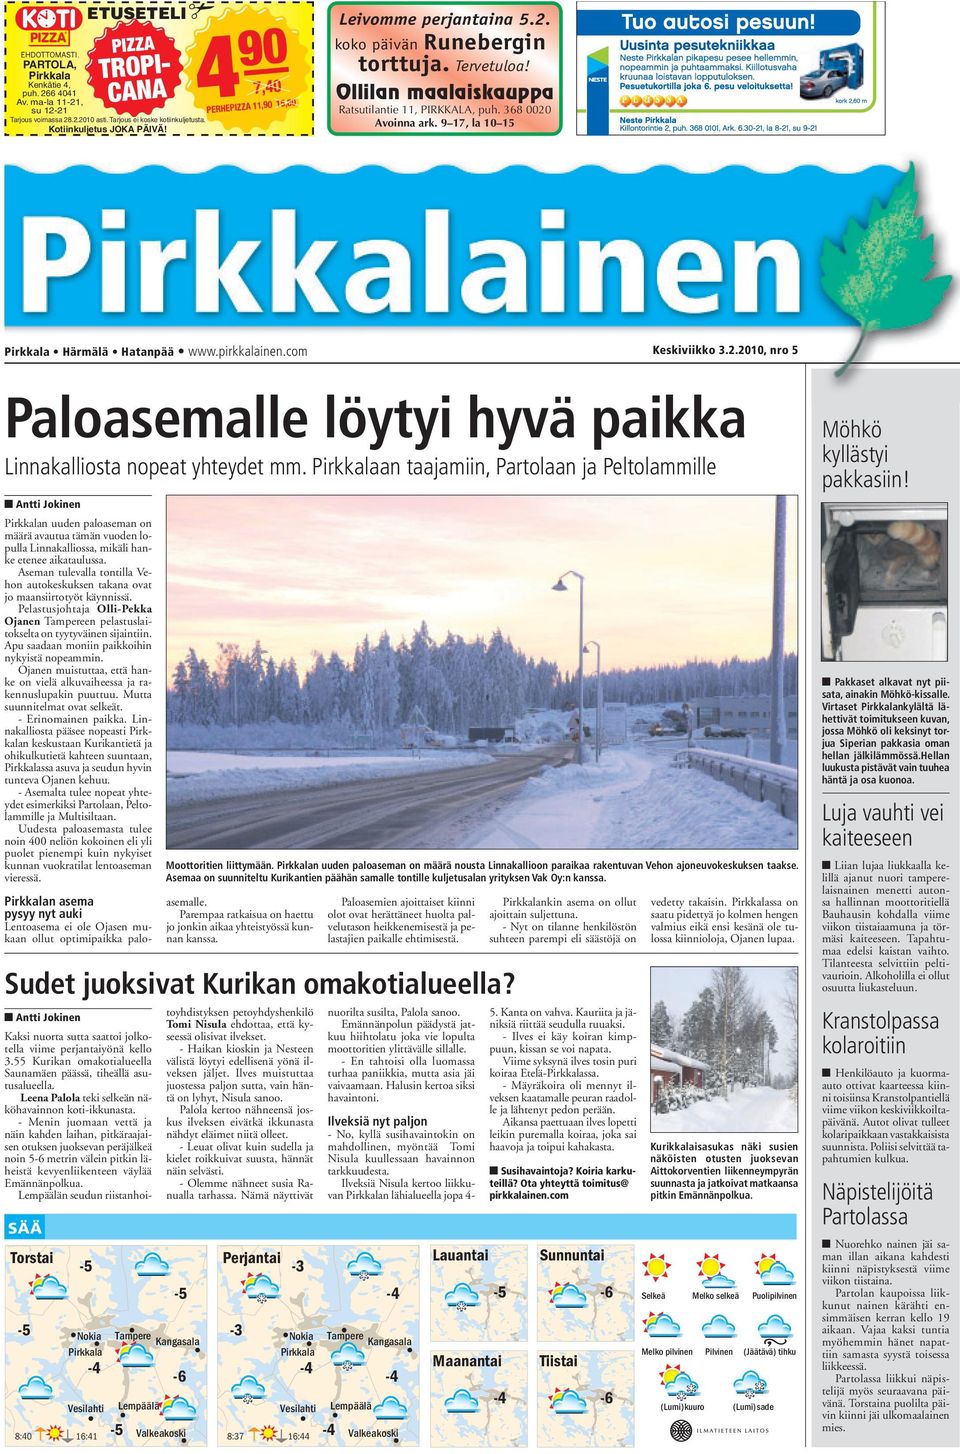 9 17, la 10 15 Pirkkala Härmälä Hatanpää www.pirkkalainen.com Keskiviikko 3.2.2010, nro 5 Paloasemalle löytyi hyvä paikka Linnakalliosta nopeat yhteydet mm.